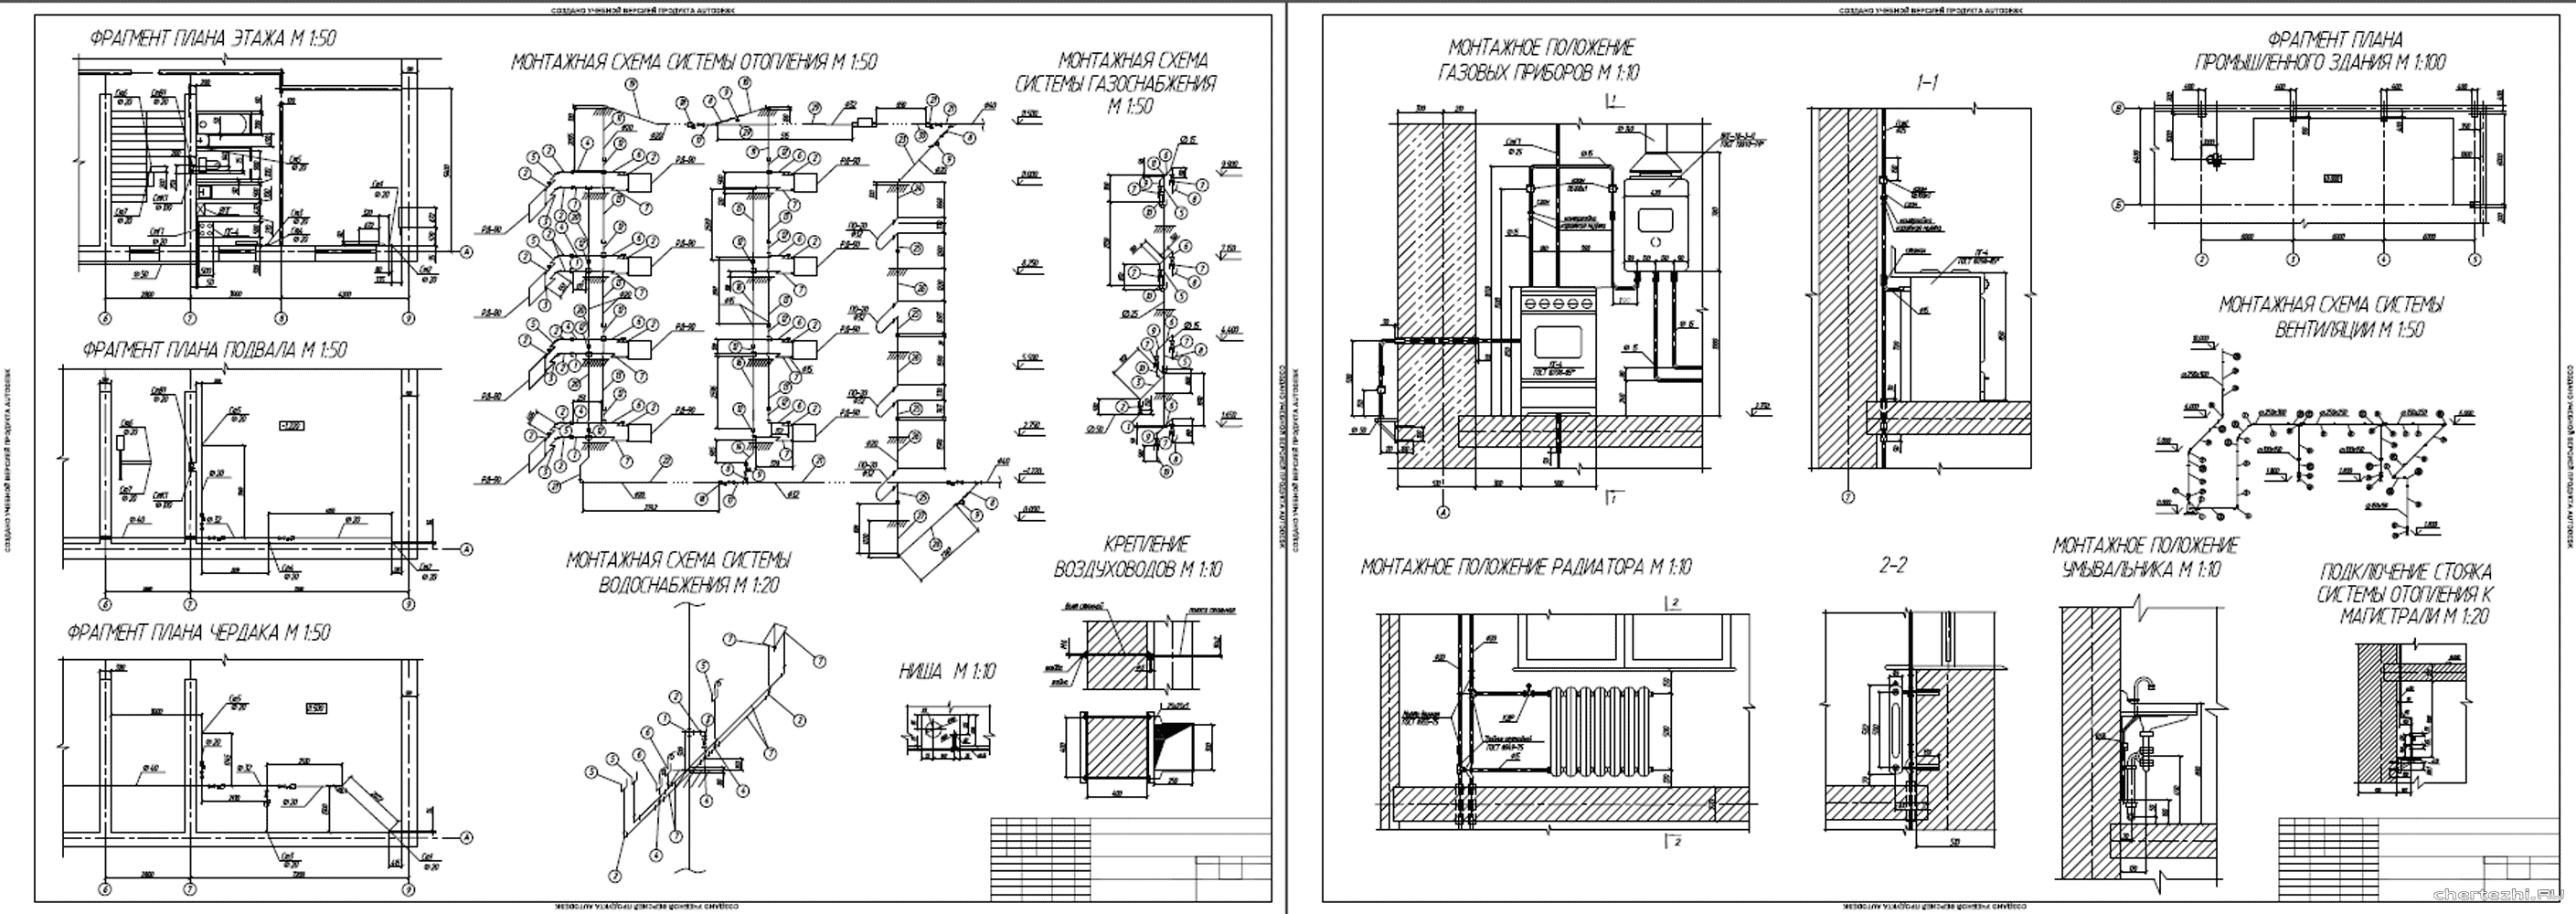 Курсовой проект - Монтаж систем отопления, водоснабжения, газоснабжения и вентиляции четырехэтажного жилого здания